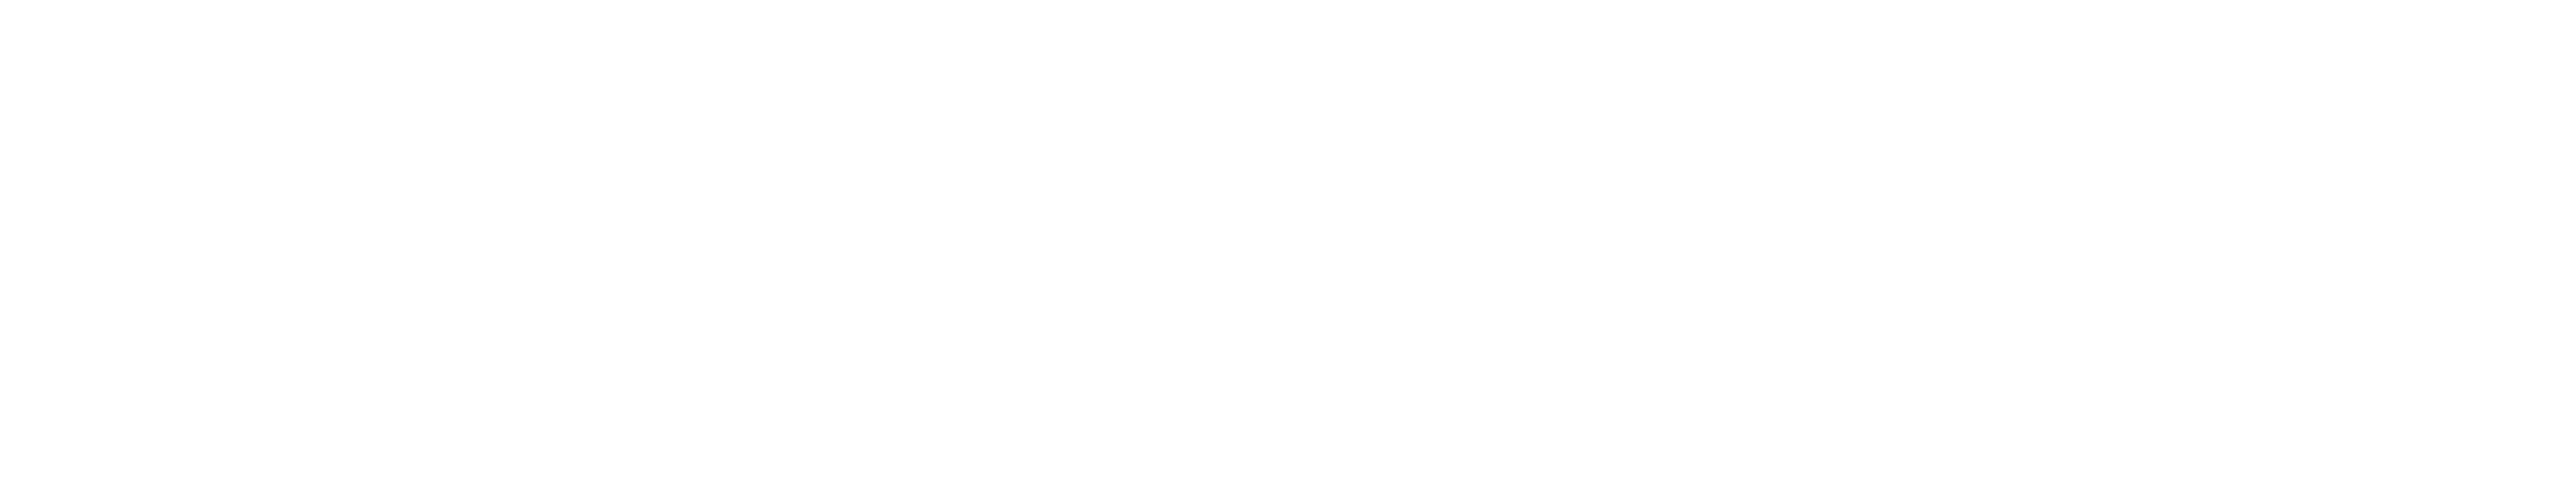 Kate & Leopold logo